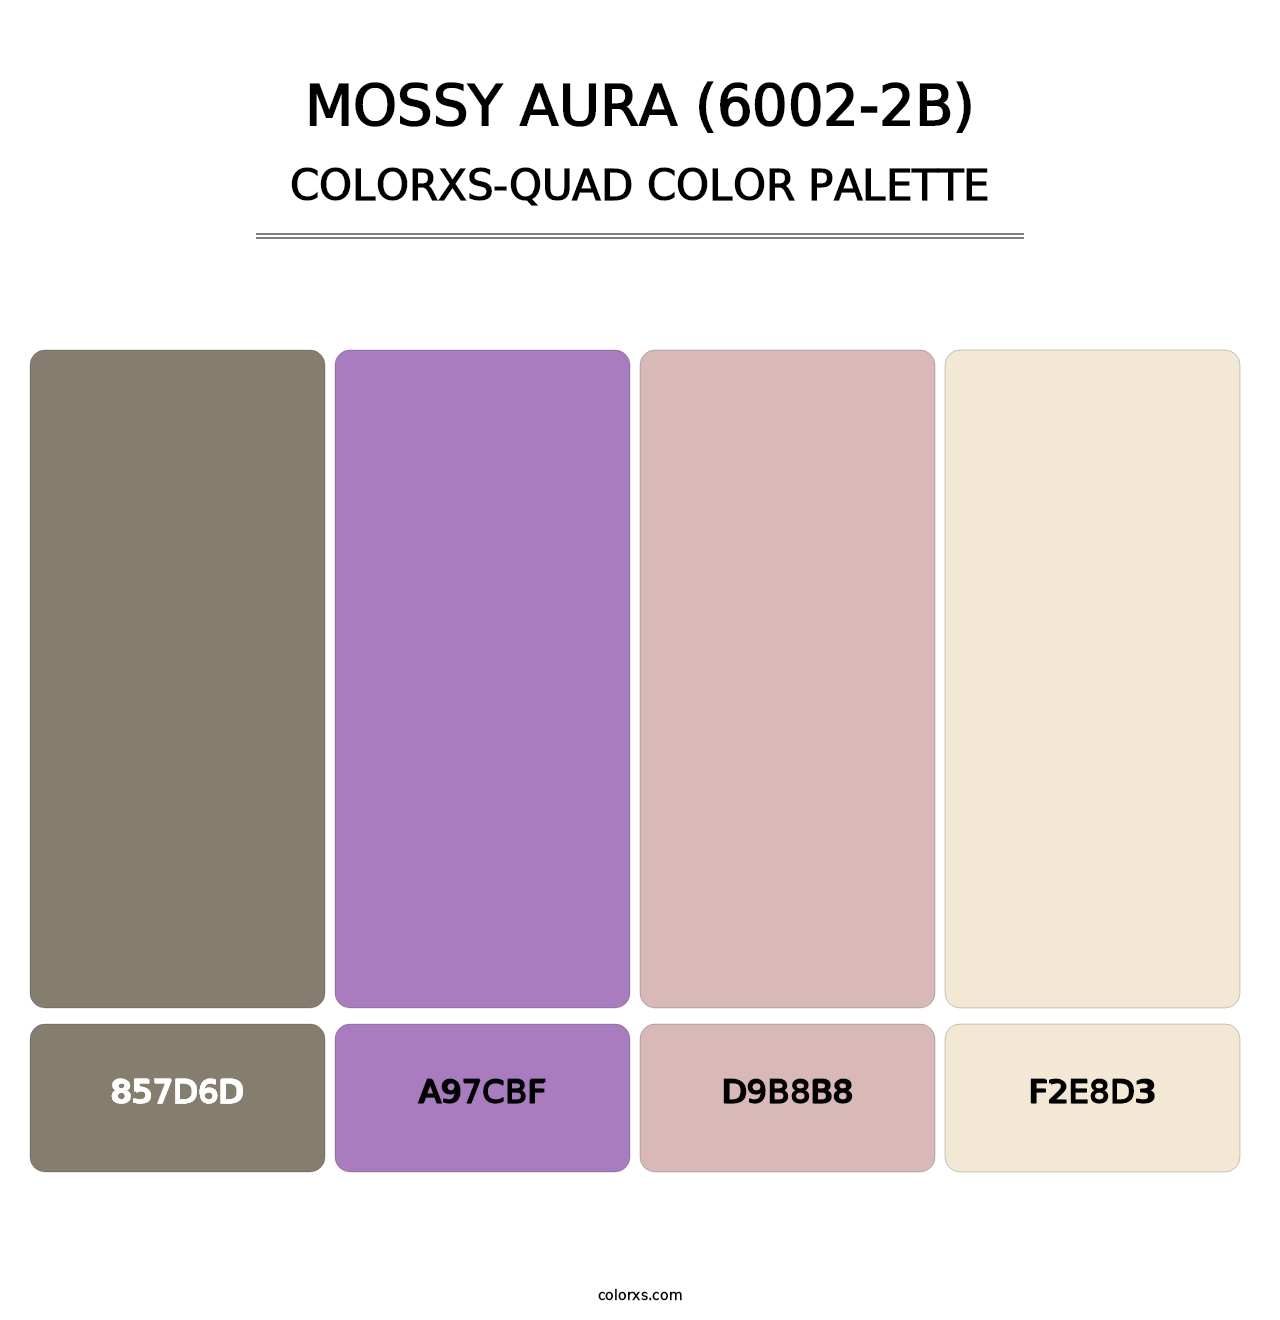 Mossy Aura (6002-2B) - Colorxs Quad Palette